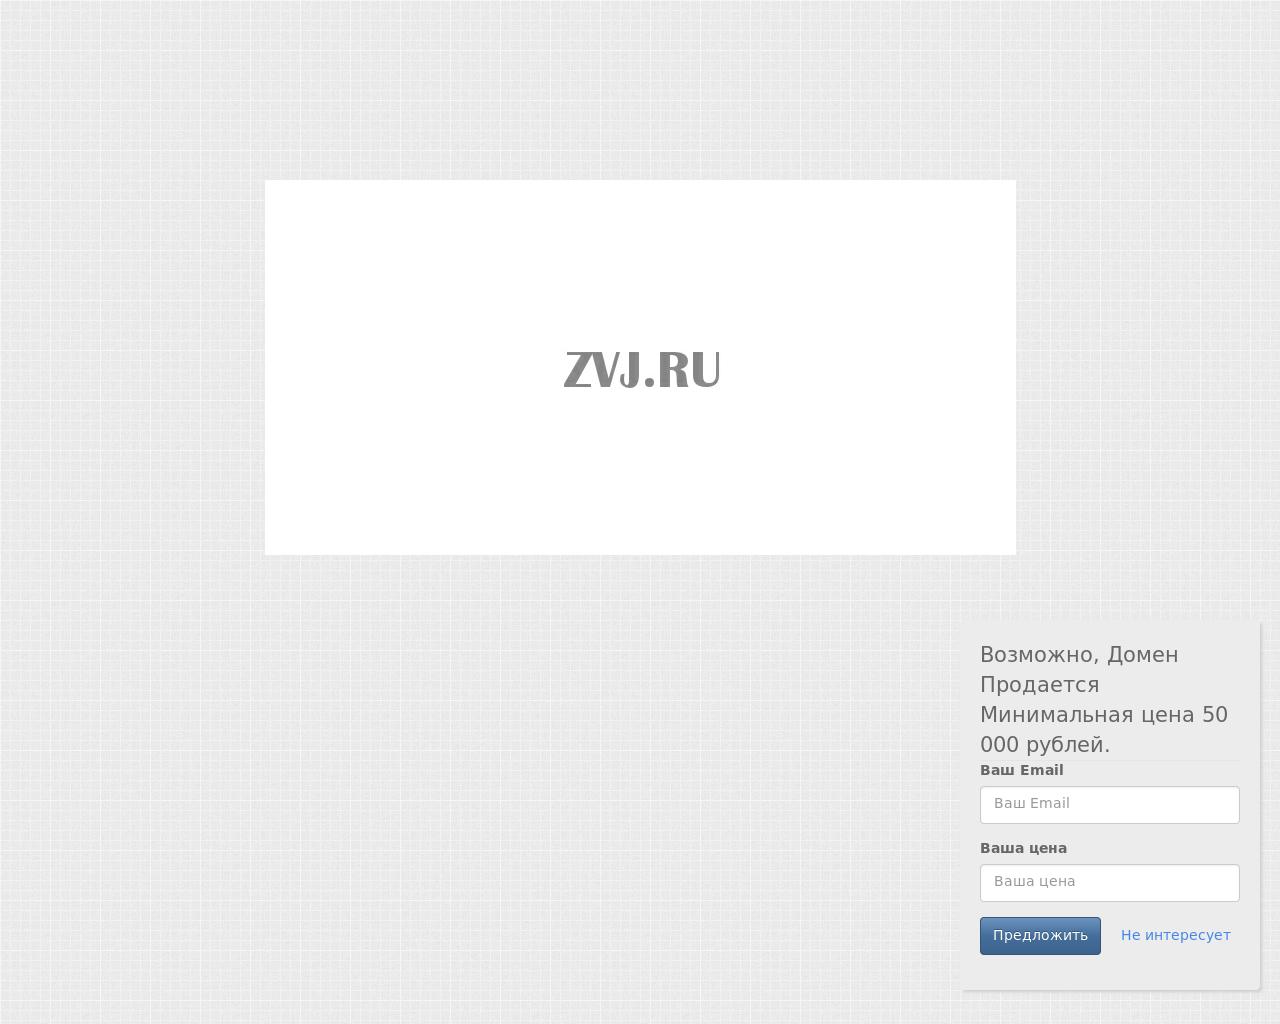 Изображение сайта zvj.ru в разрешении 1280x1024